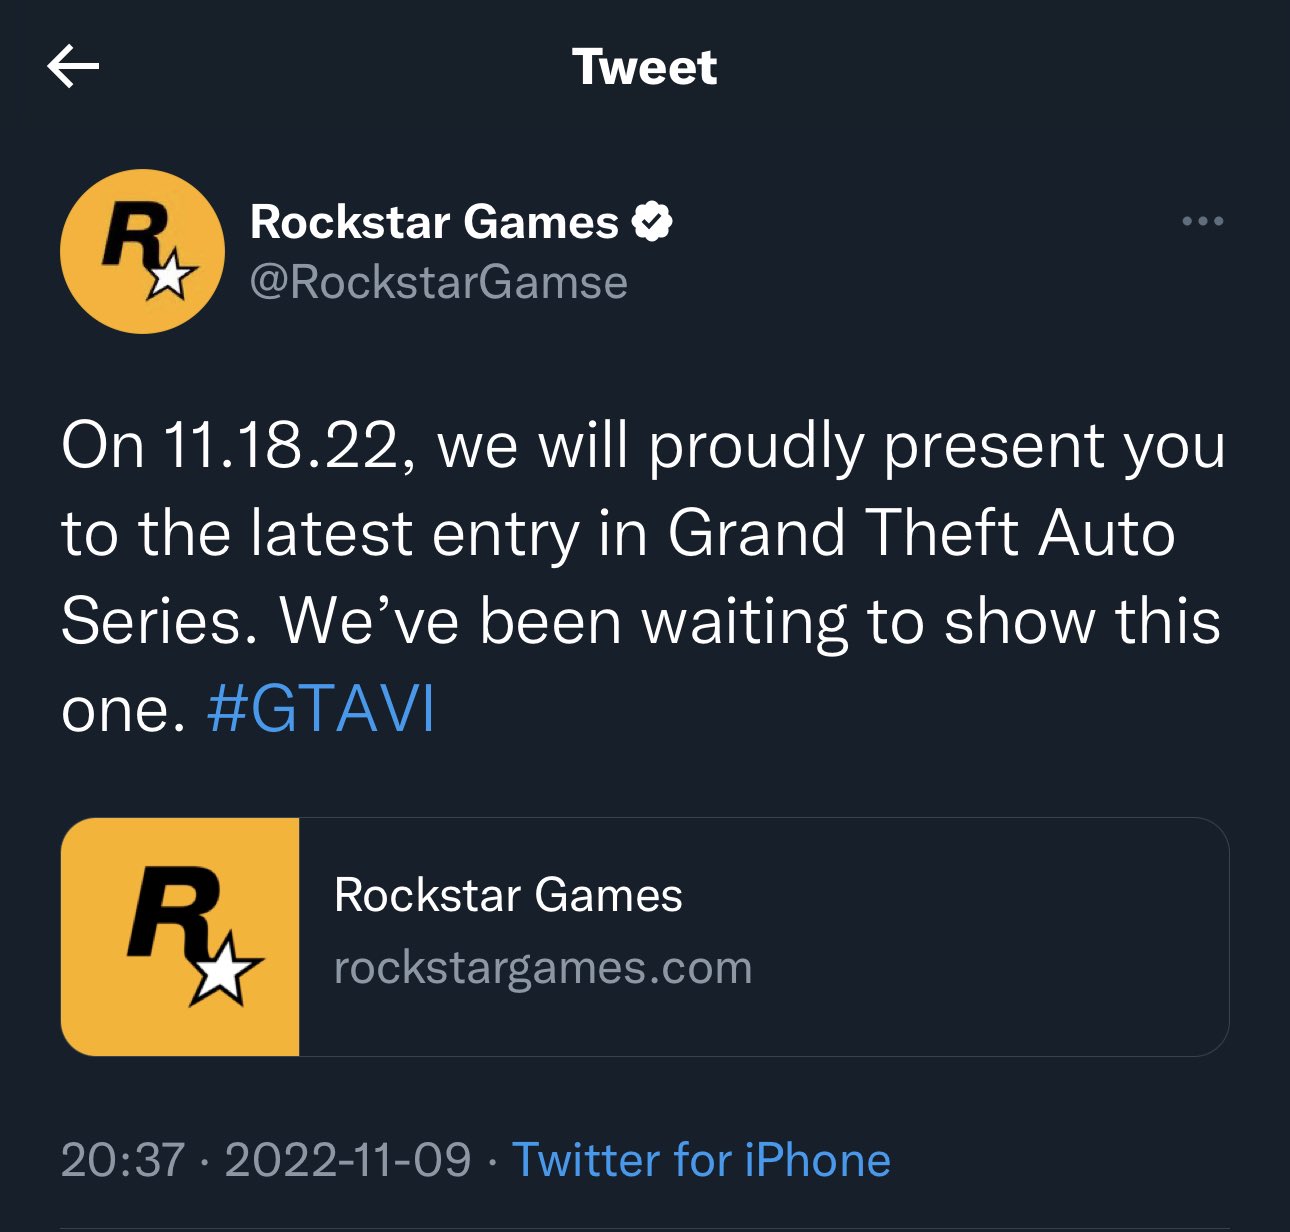 Tweet falso anunciando GTA VI